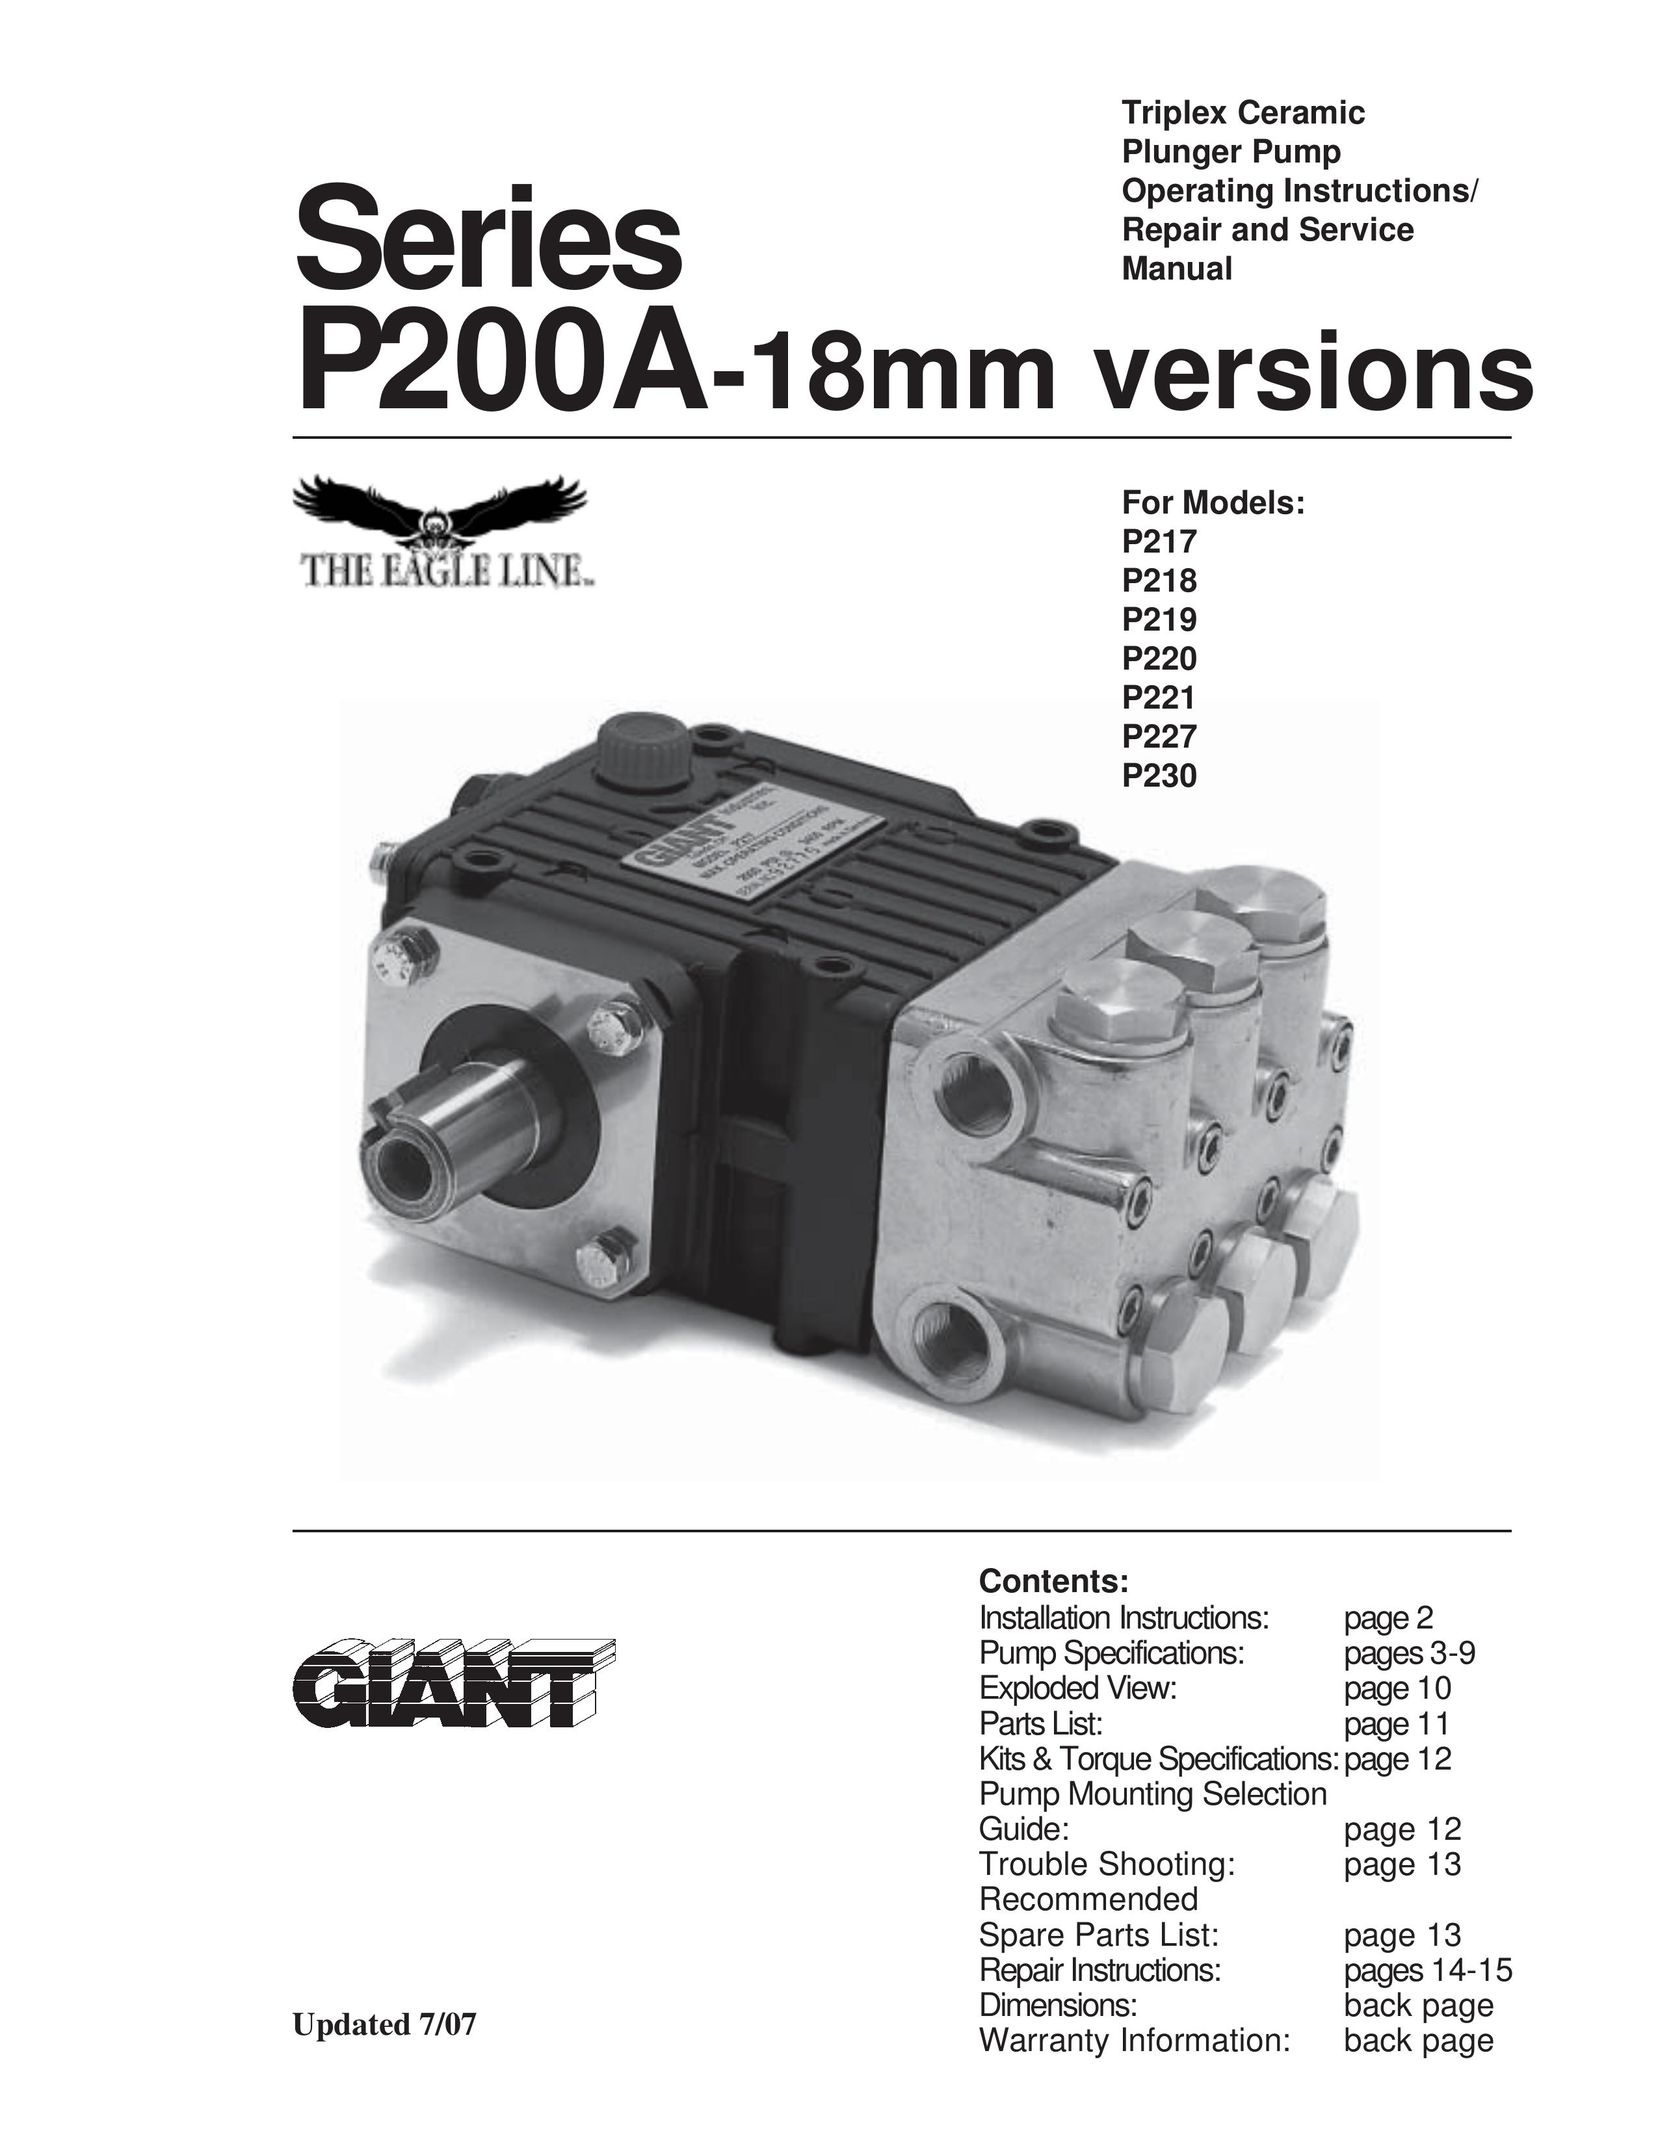 Giant P217 Water Pump User Manual